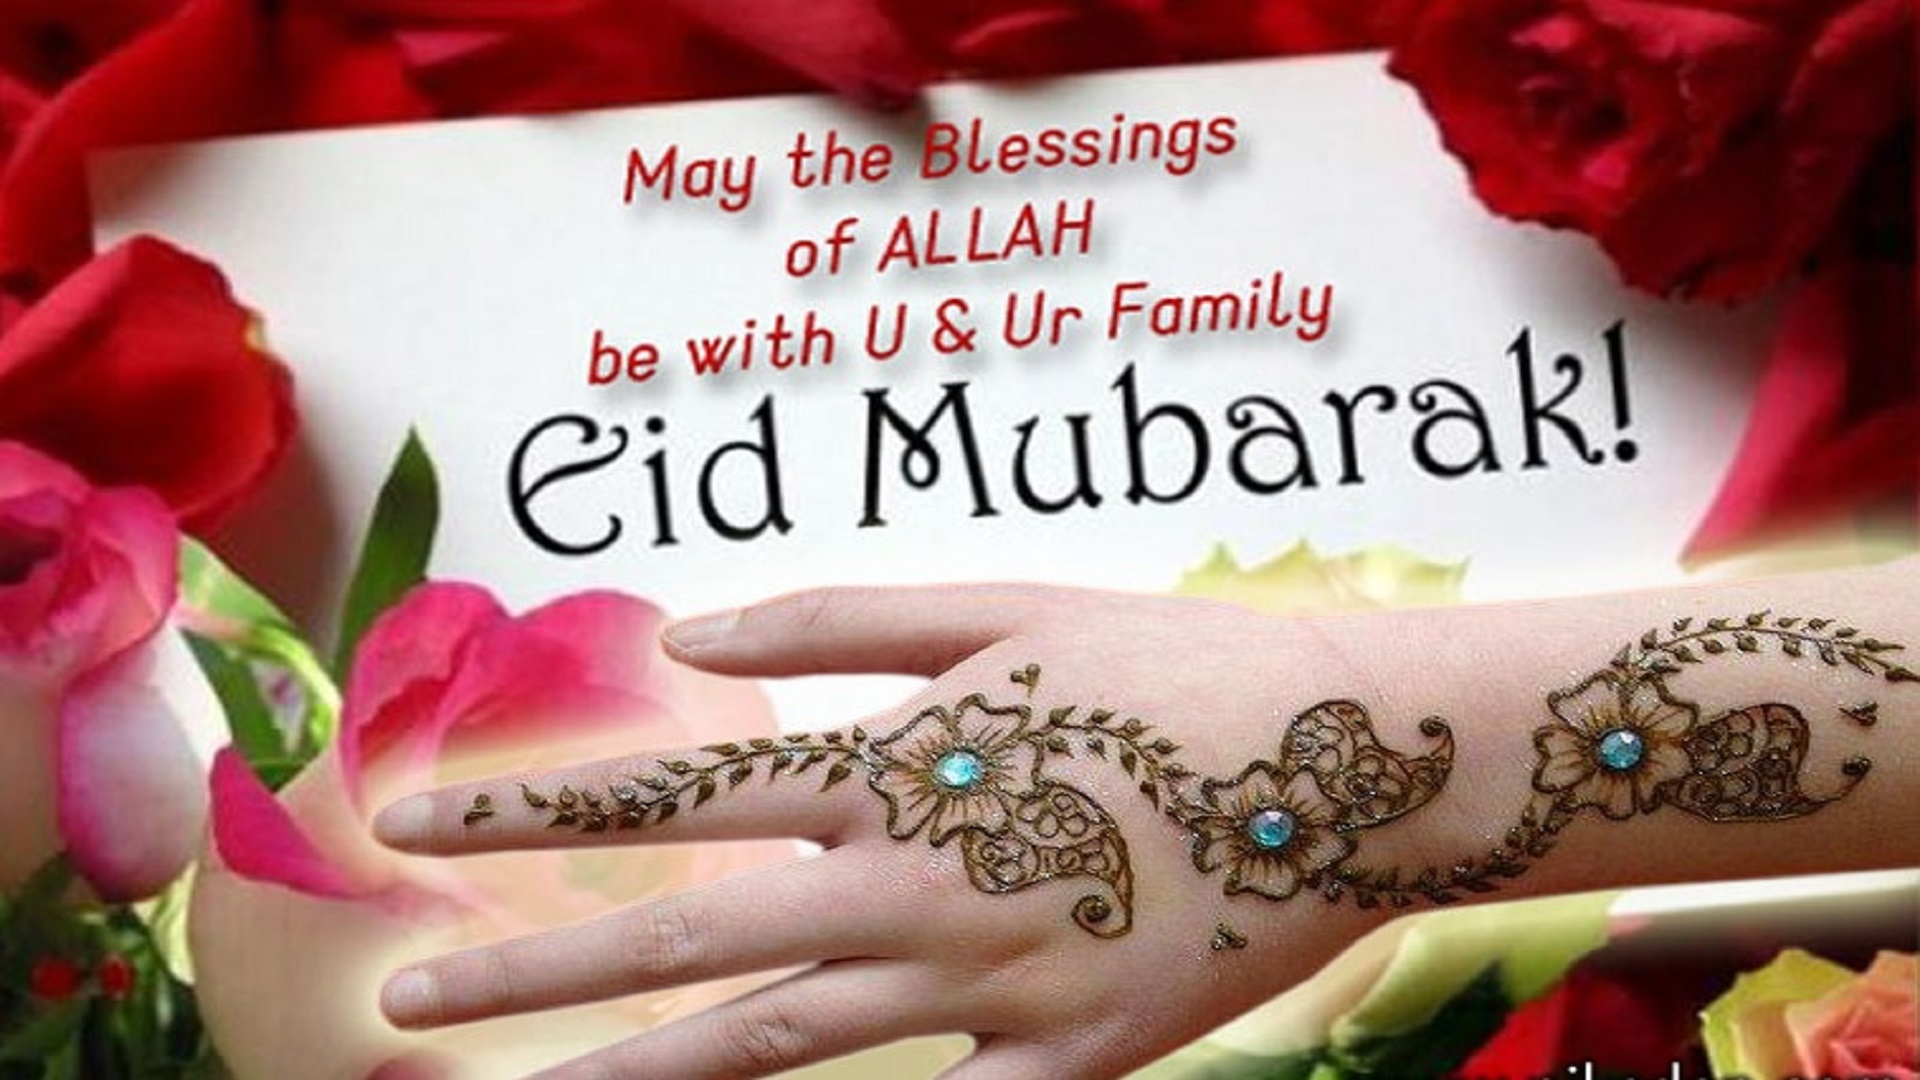 Eid Mubarak 2017 Date , HD Wallpaper & Backgrounds